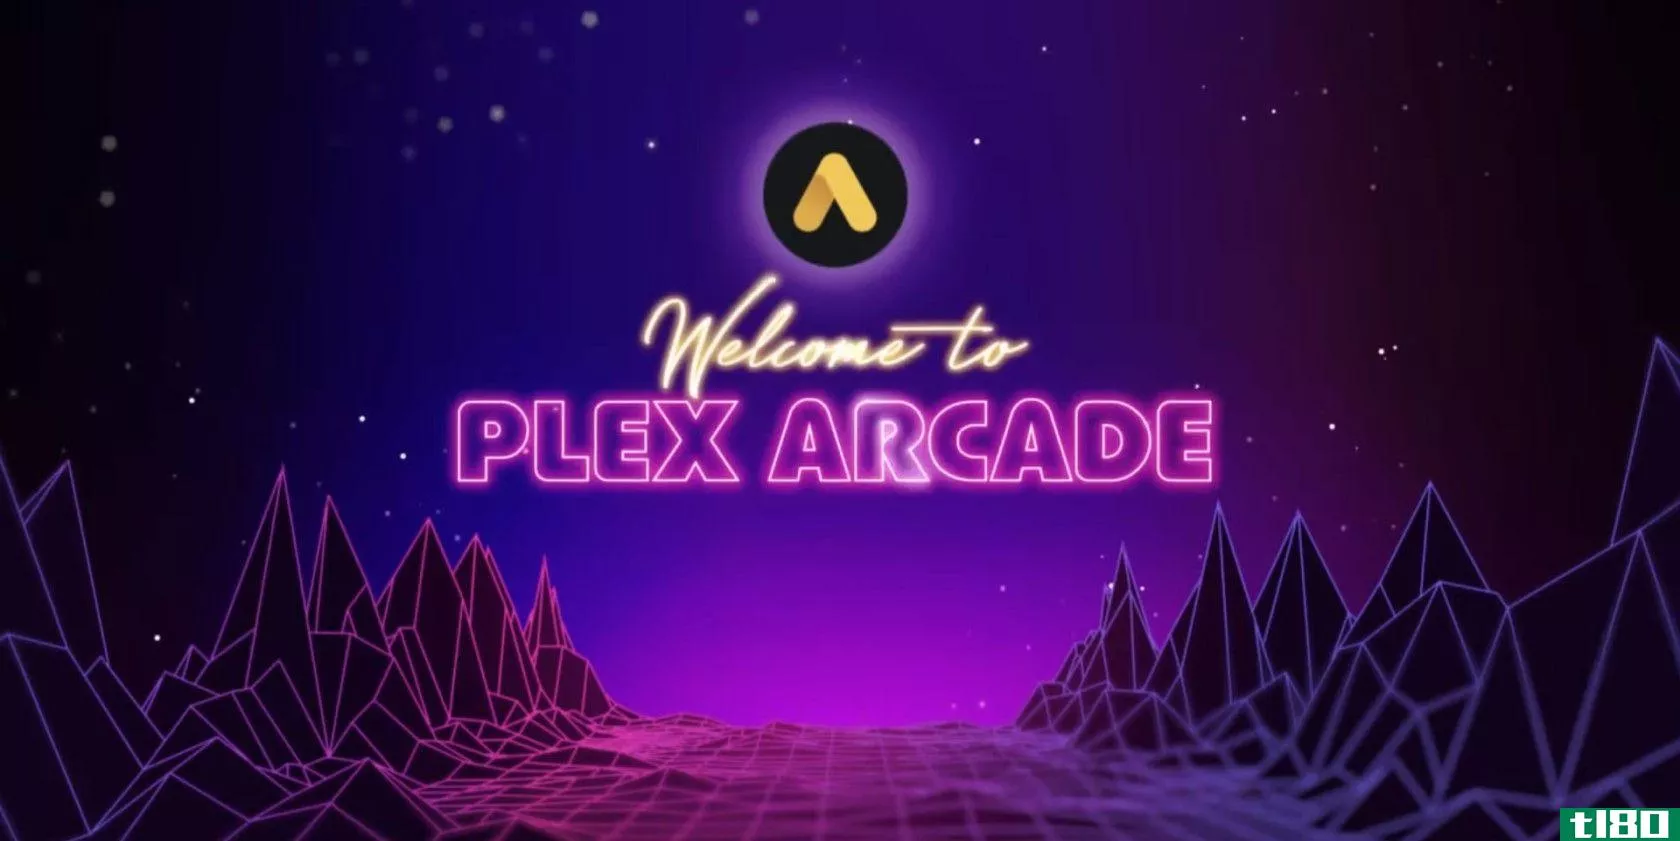 plex arcade将数十款atari游戏带到您的客厅